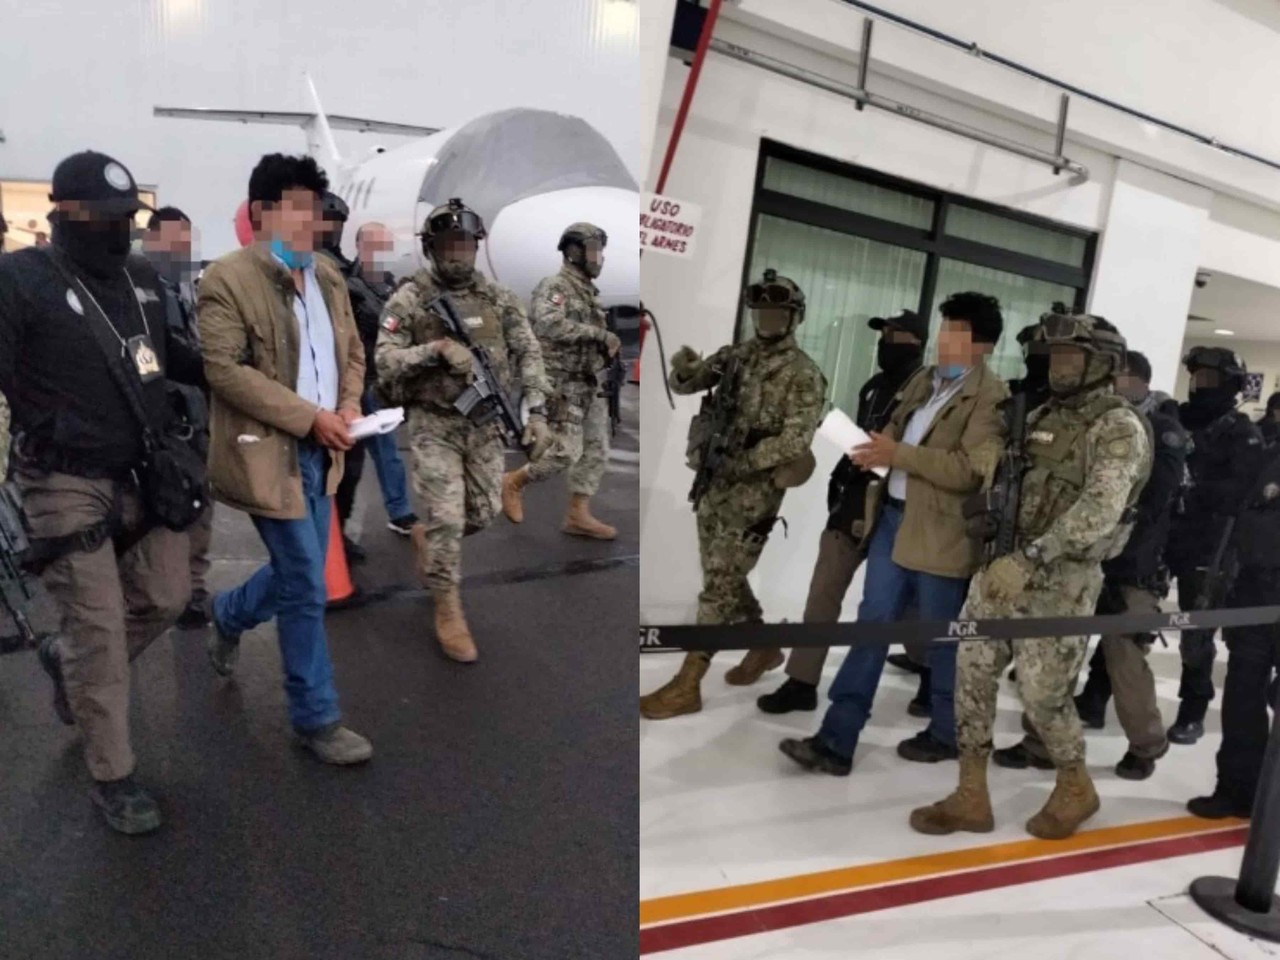 Ingresa Caro Quintero al penal del Altiplano tras detención